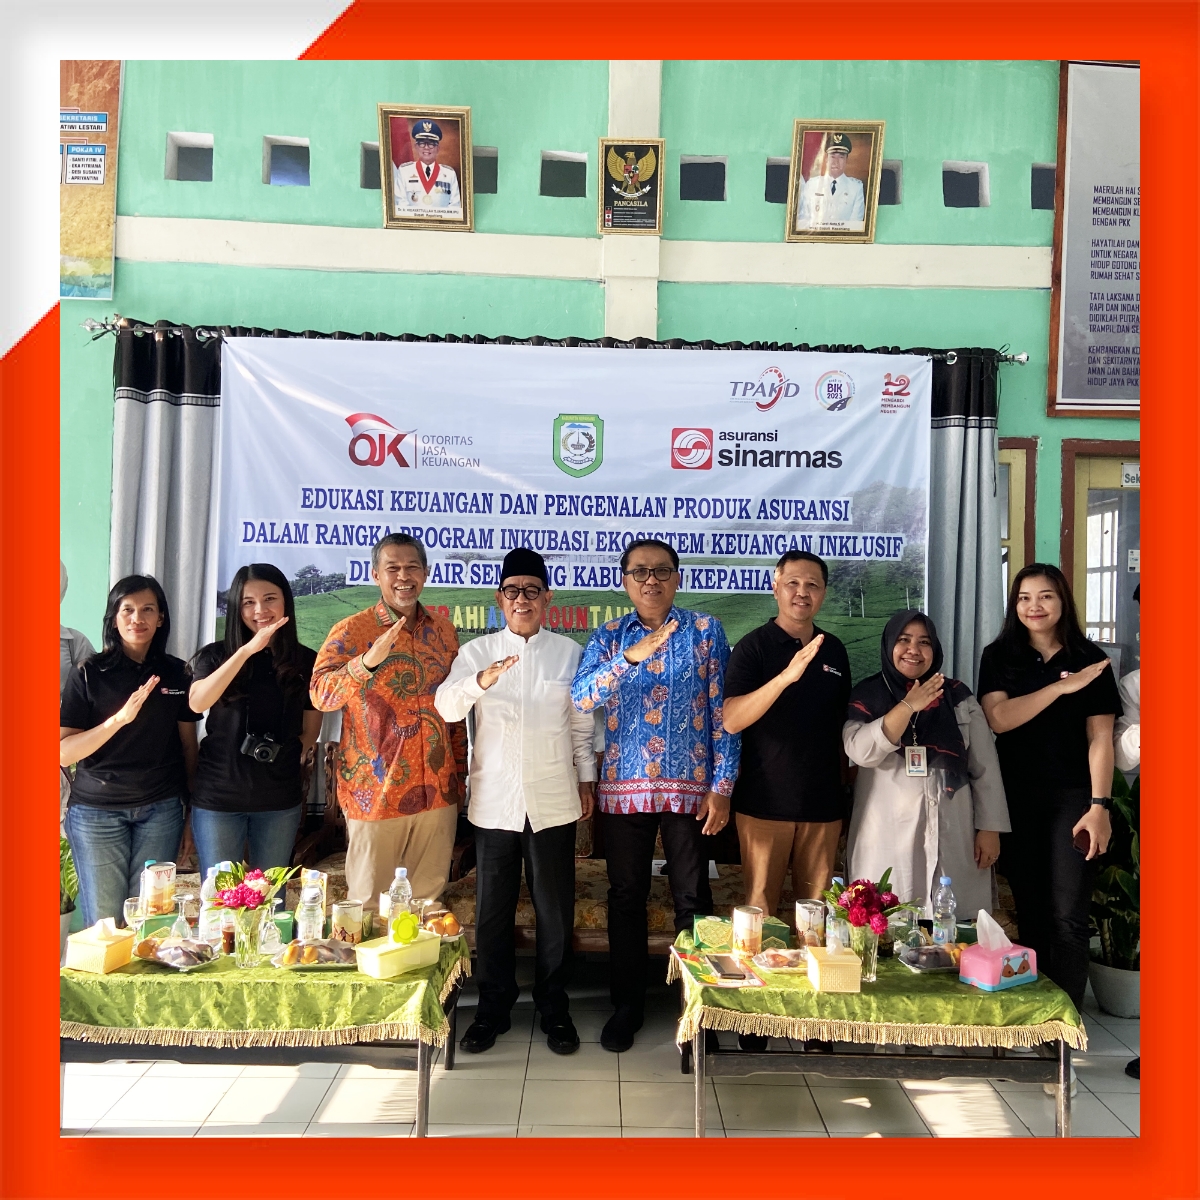 Asuransi Sinar Mas Dukung Otoritas Jasa Keuangan untuk Tingkatkan Literasi Keuangan di Desa Air Sempiang, Kabawetan, Bengkulu